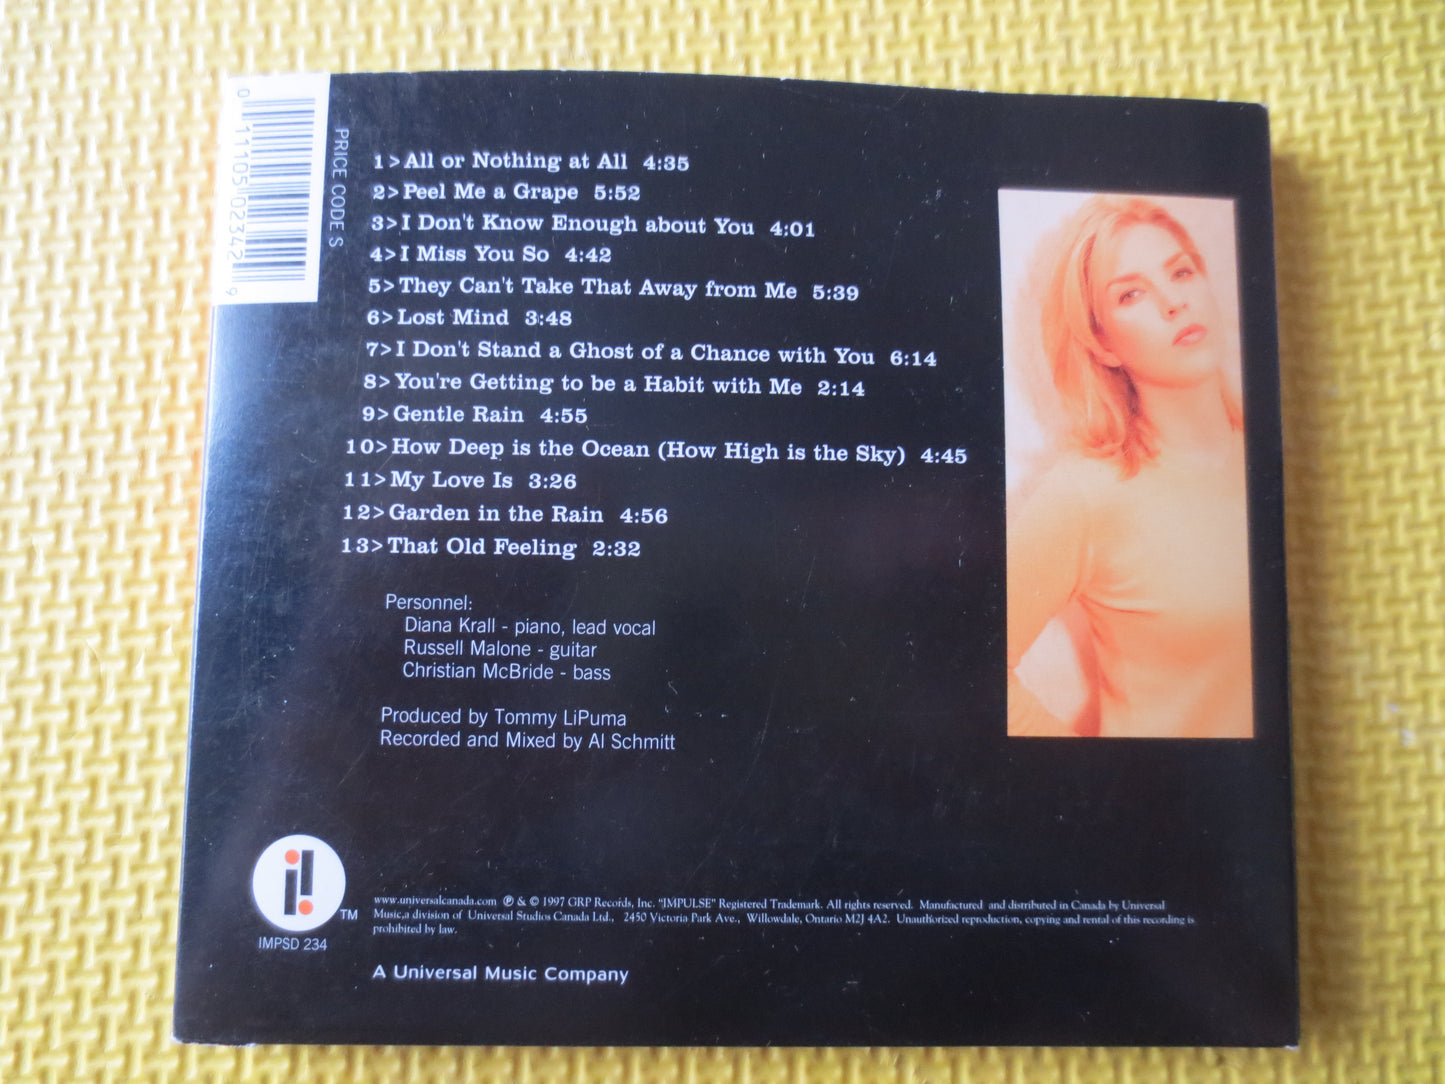 DIANA KRALL, LOVE Scenes, Diana Krall Cd, Jazz Music Cd, Piano Music, Diana Krall Lp, Cd Jazz Music, Cds, 1997 Compact Discs